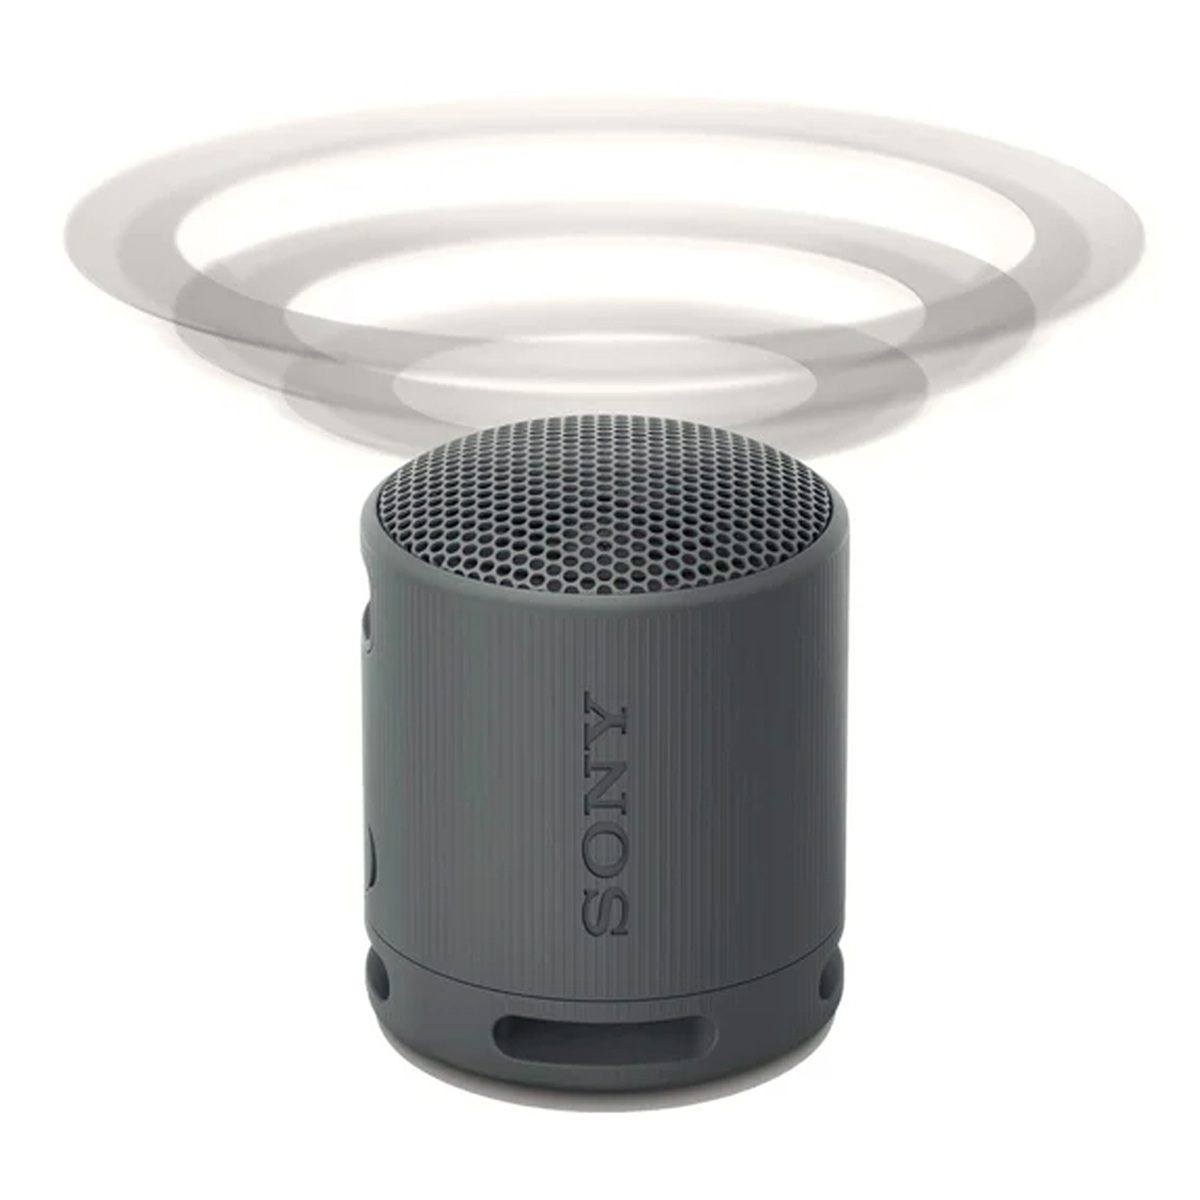 Sony SRS-XB100 Portable Wireless Speaker Black